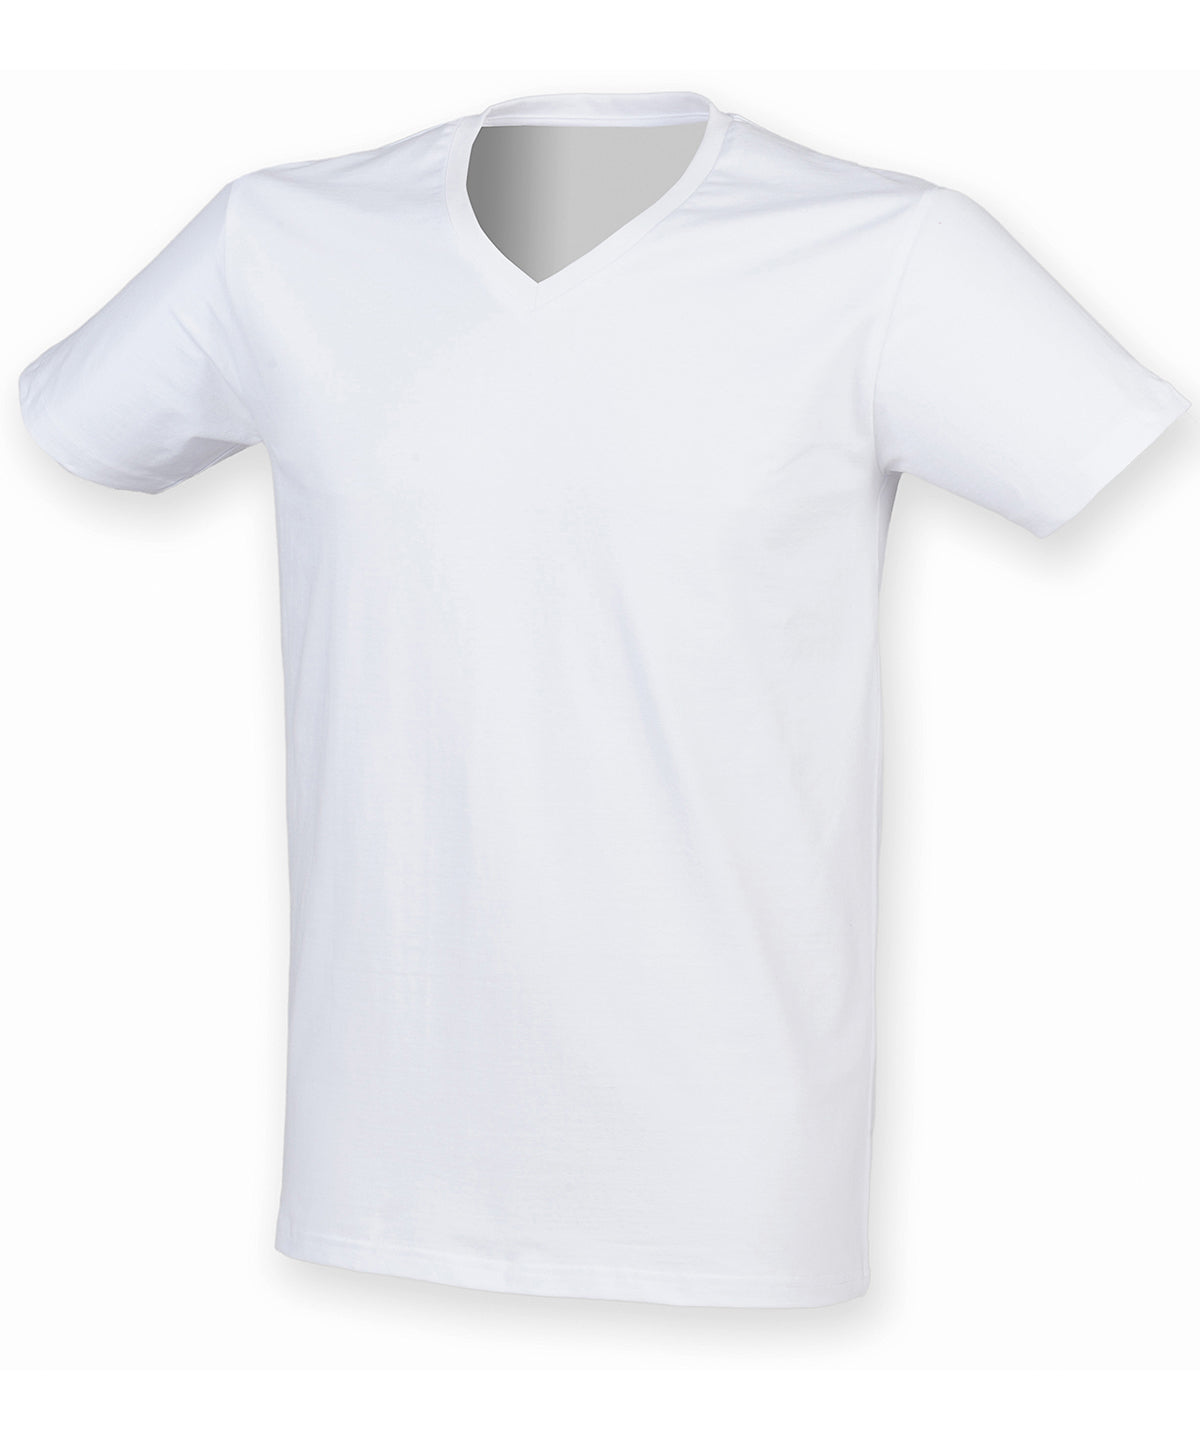 Stuttermabolir - Men's Feel Good Stretch V-neck T-shirt